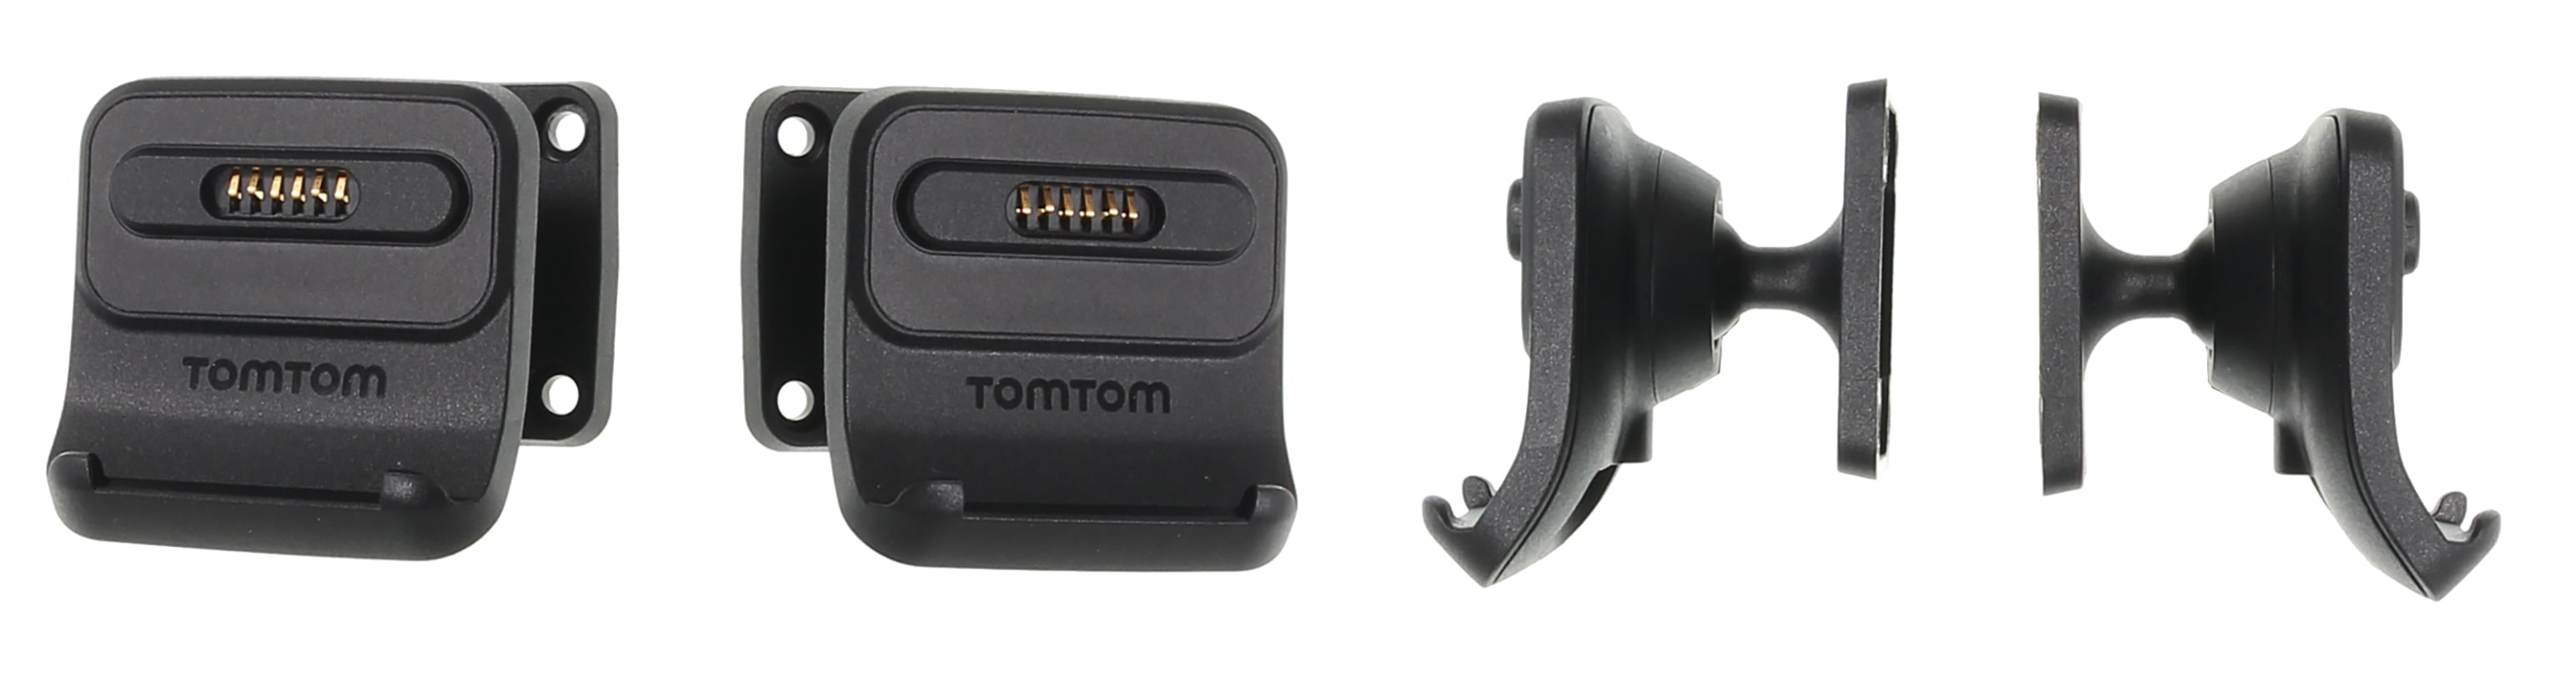 Active Dock Holder with Tilt Swivel for TomTom Pro 7350